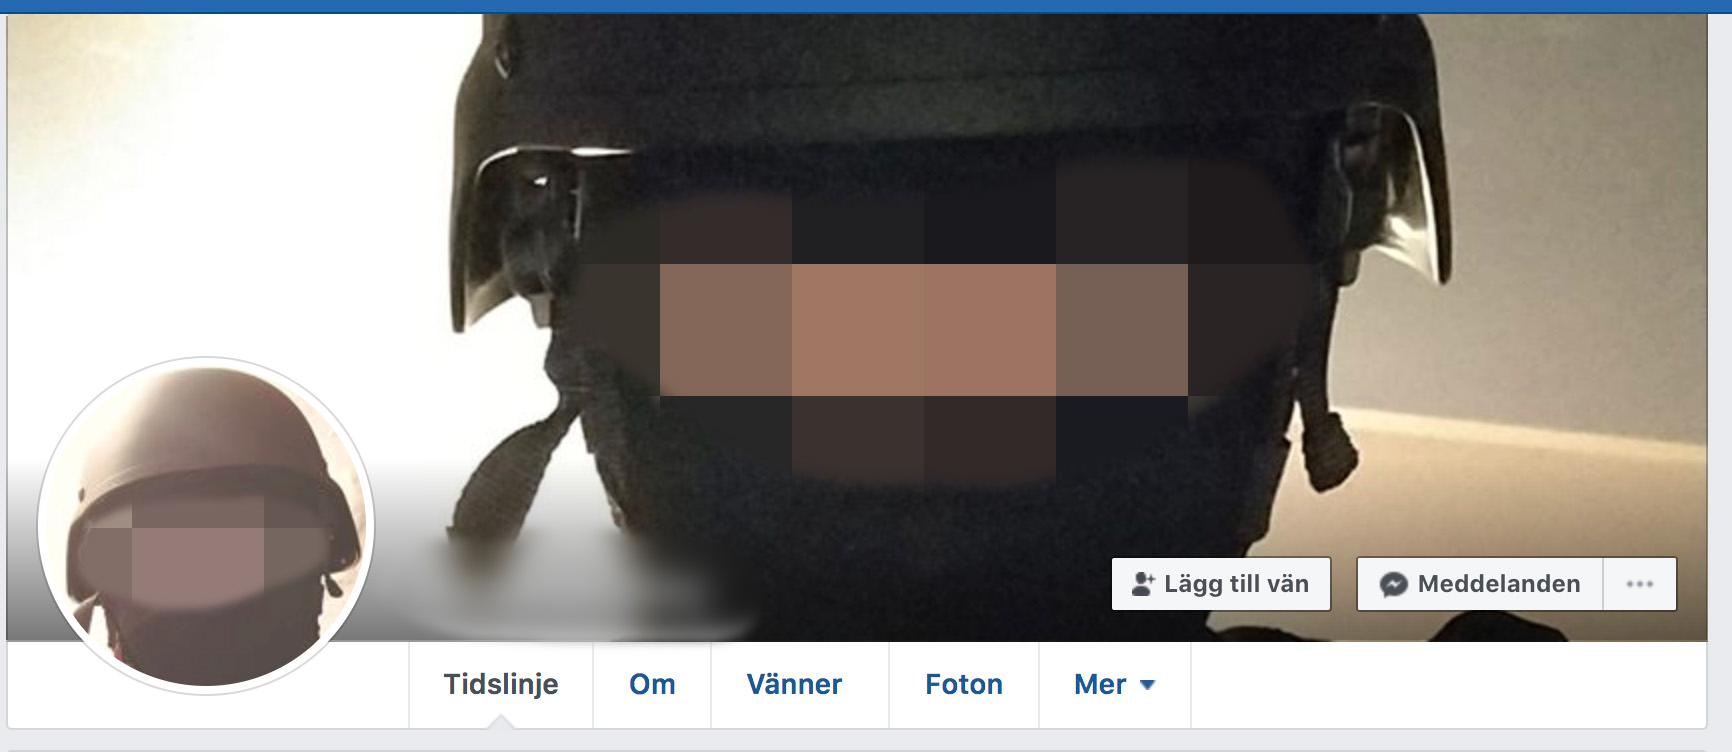 På Facebook bar han hjälm och mask - och kallade sig ”skjutare på Hässleholms Tekniska skola.”